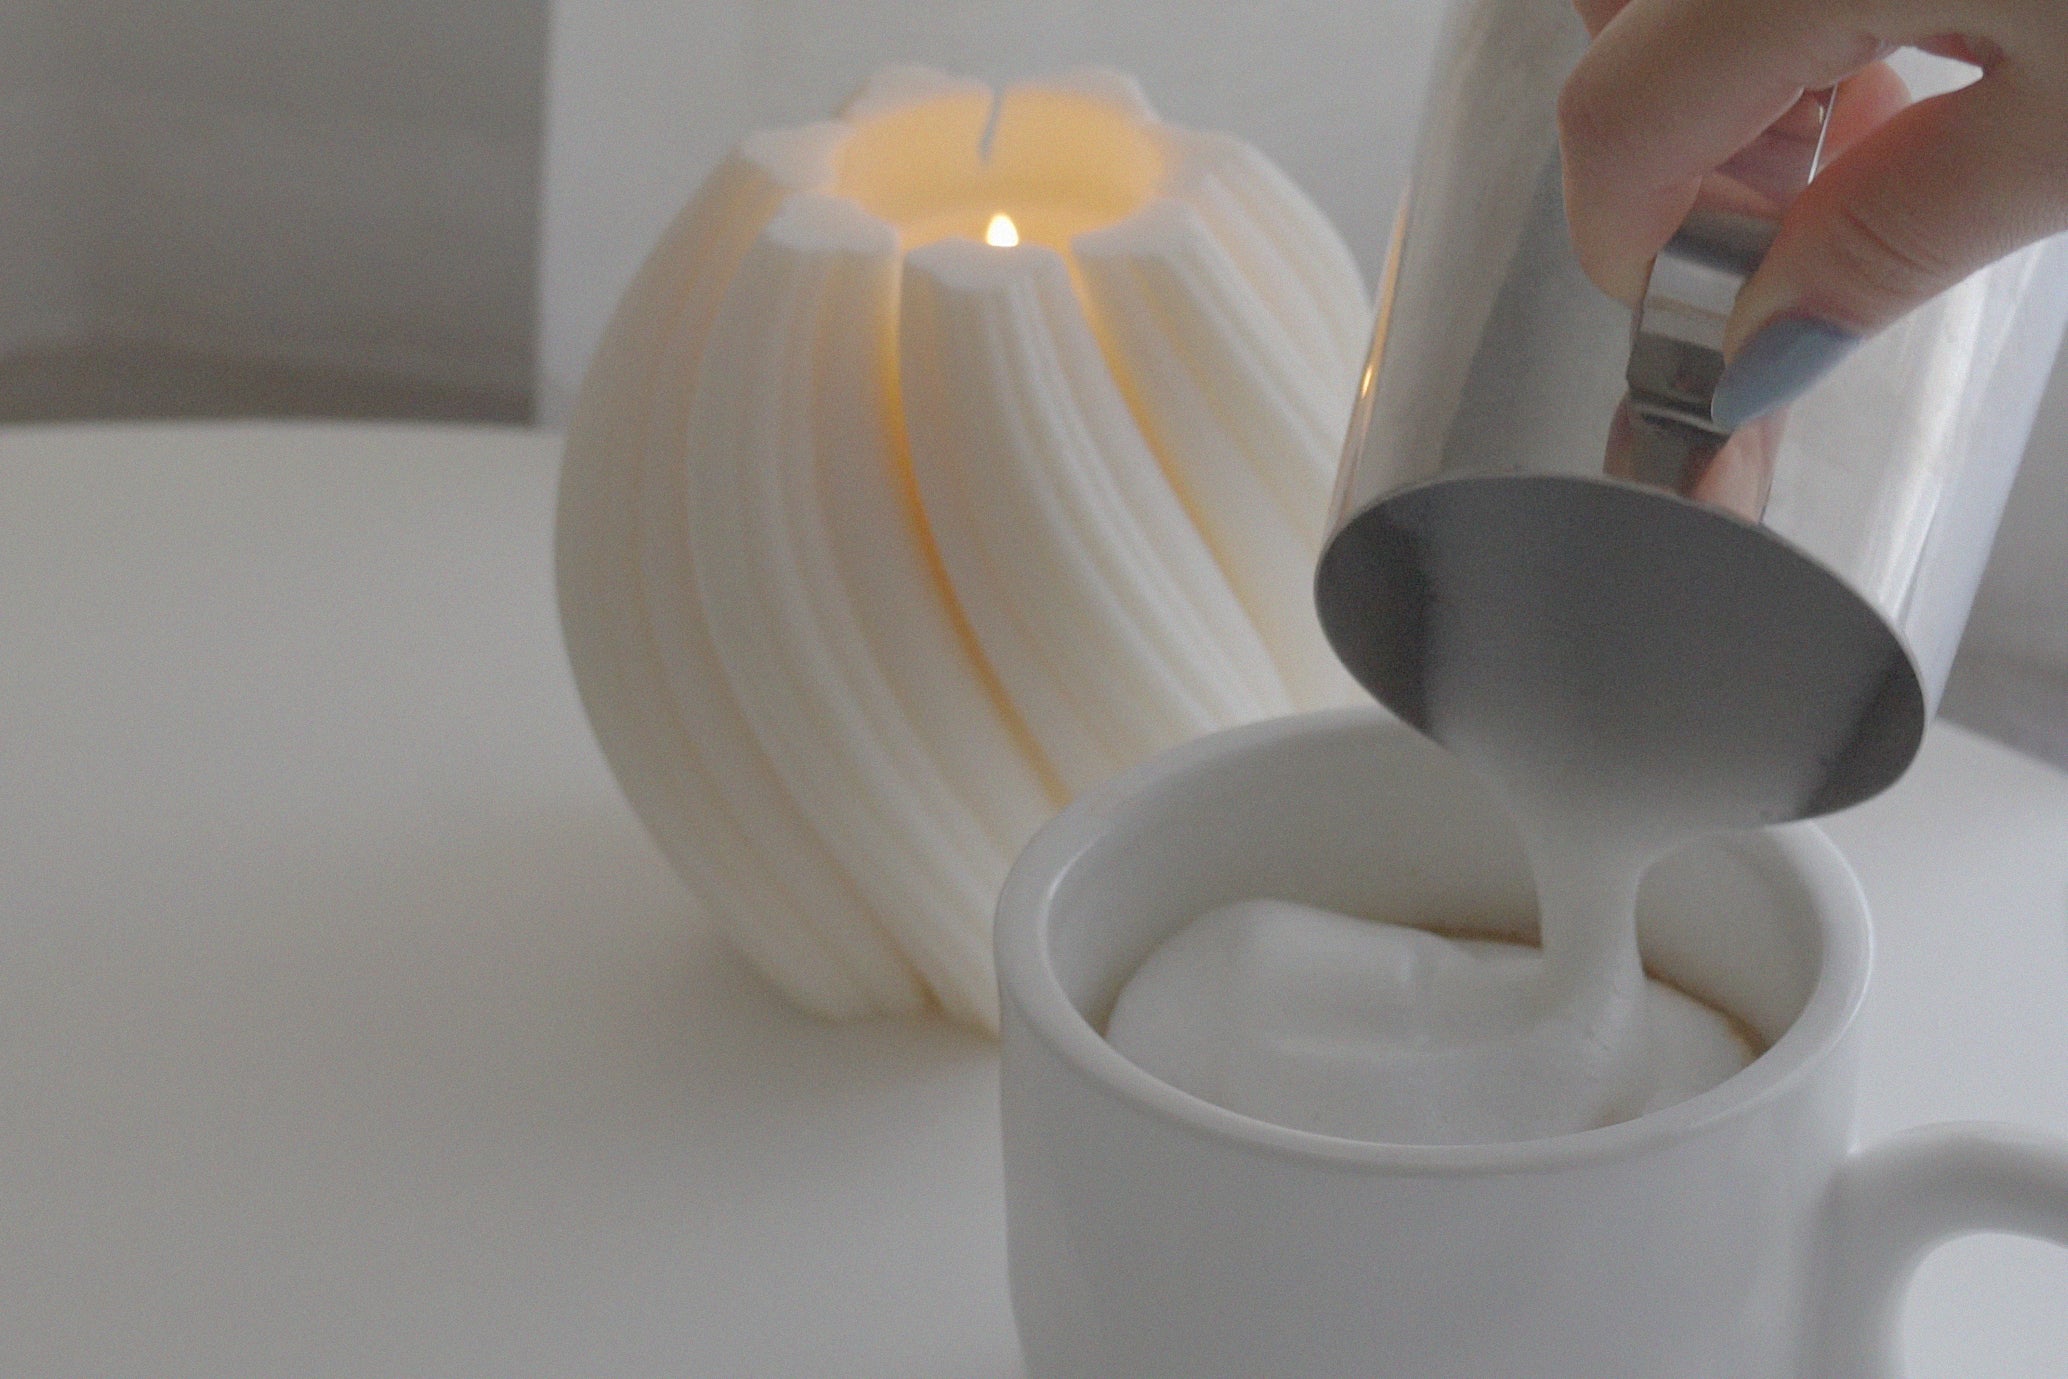 verter crema encima de una taza de café con leche en una taza con una vela encendida en forma de remolino